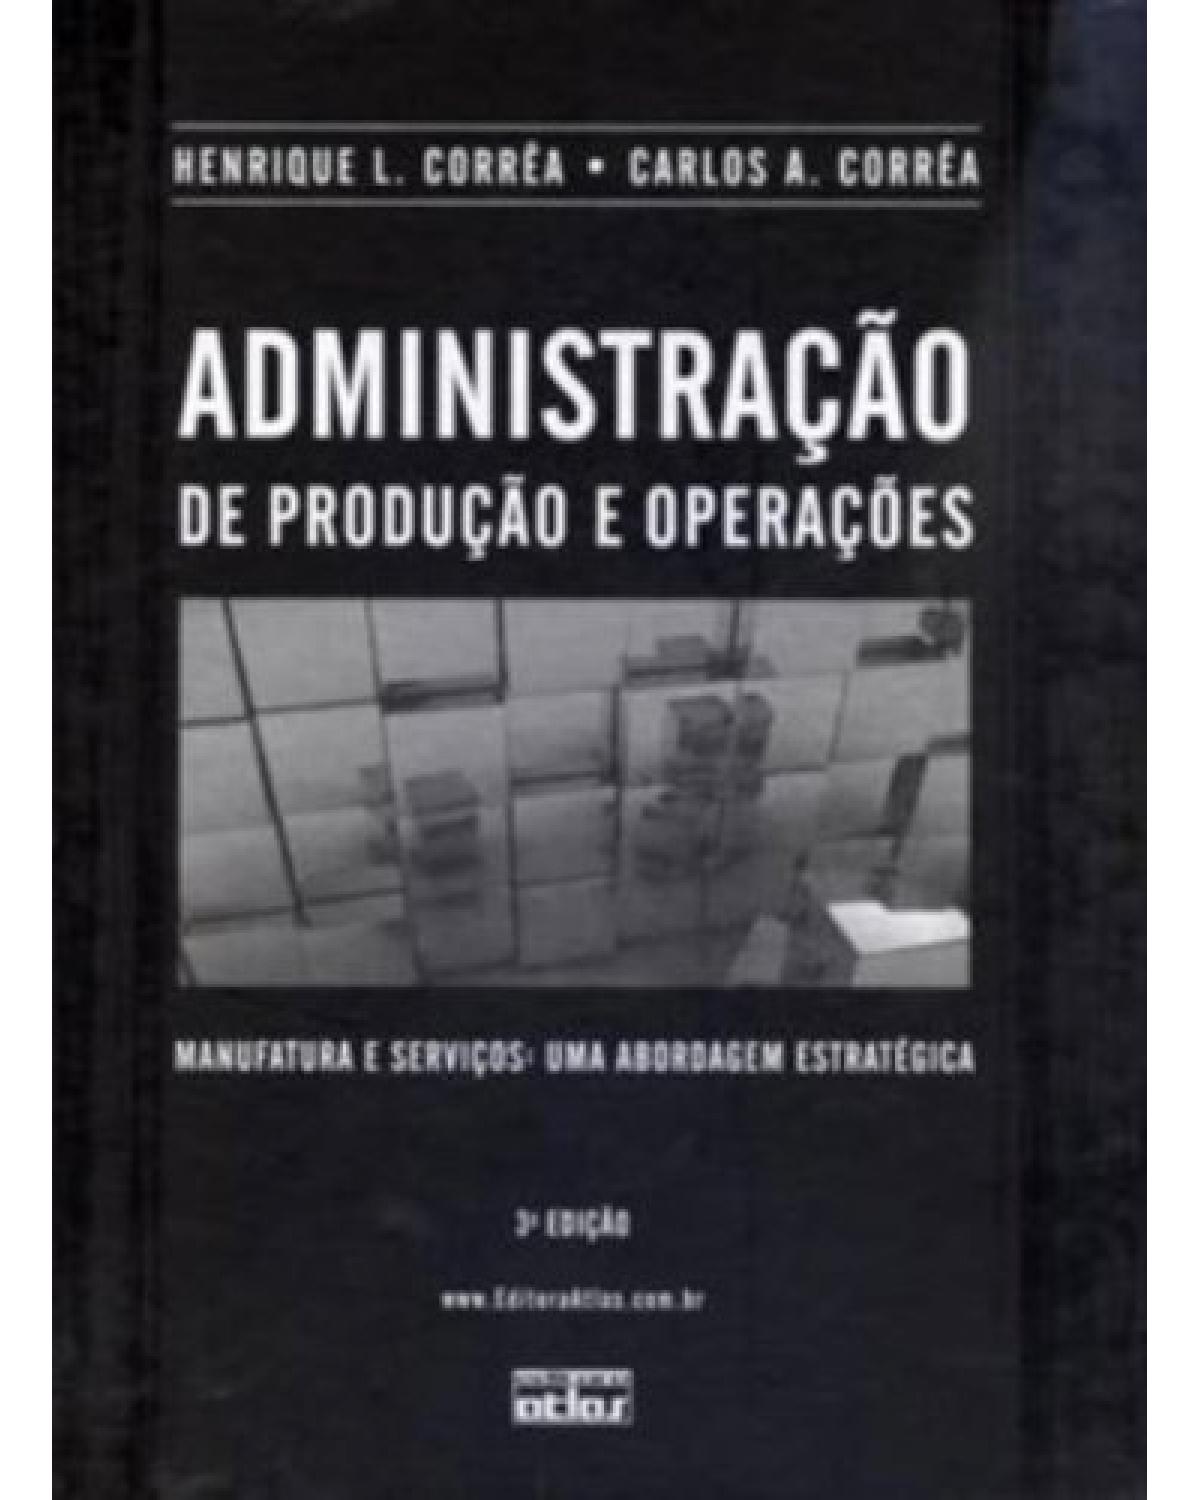 ADMINISTRAÇÃO DE PRODUÇÃO E OPERAÇÕES: Manufatura e Serviços - Uma Abordagem Estratégica - Manufatura e serviços: uma abordagem estratégica - 3ª Edição | 2012